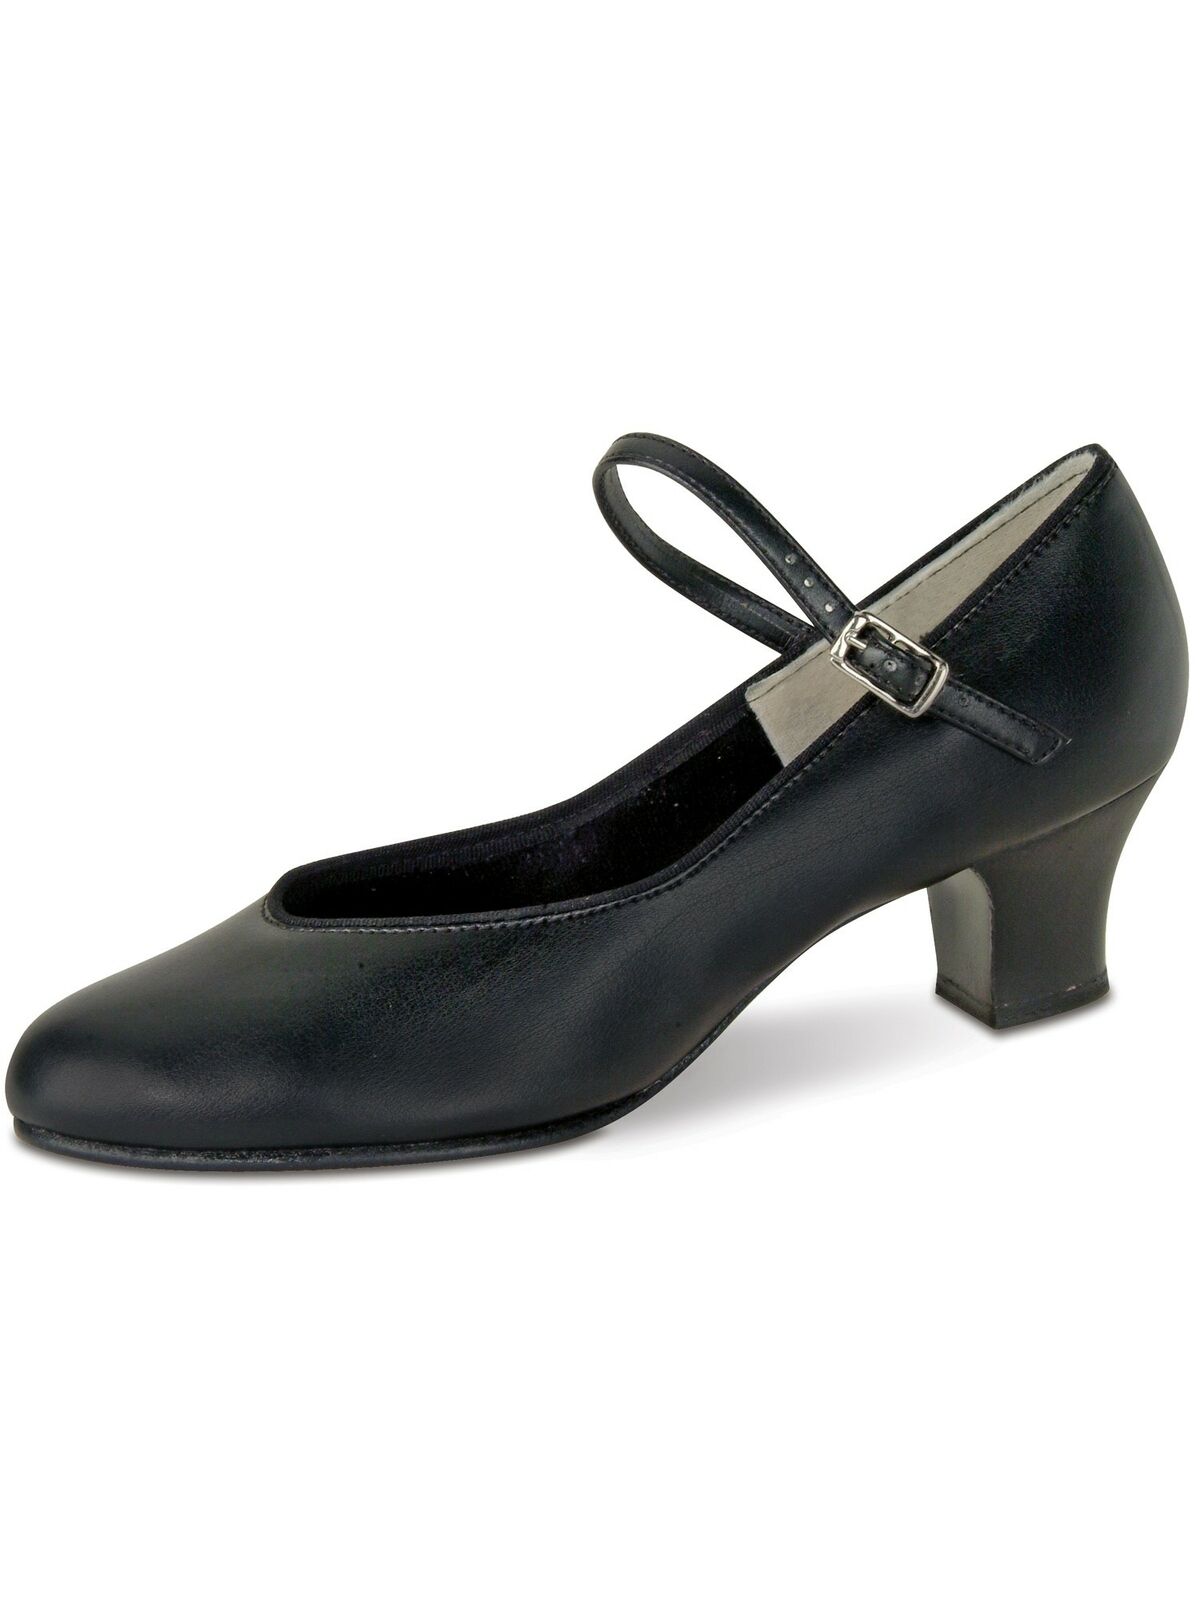 Danshuz Adult Black Versatile Character Heel Dance Shoes 10 Women Wide